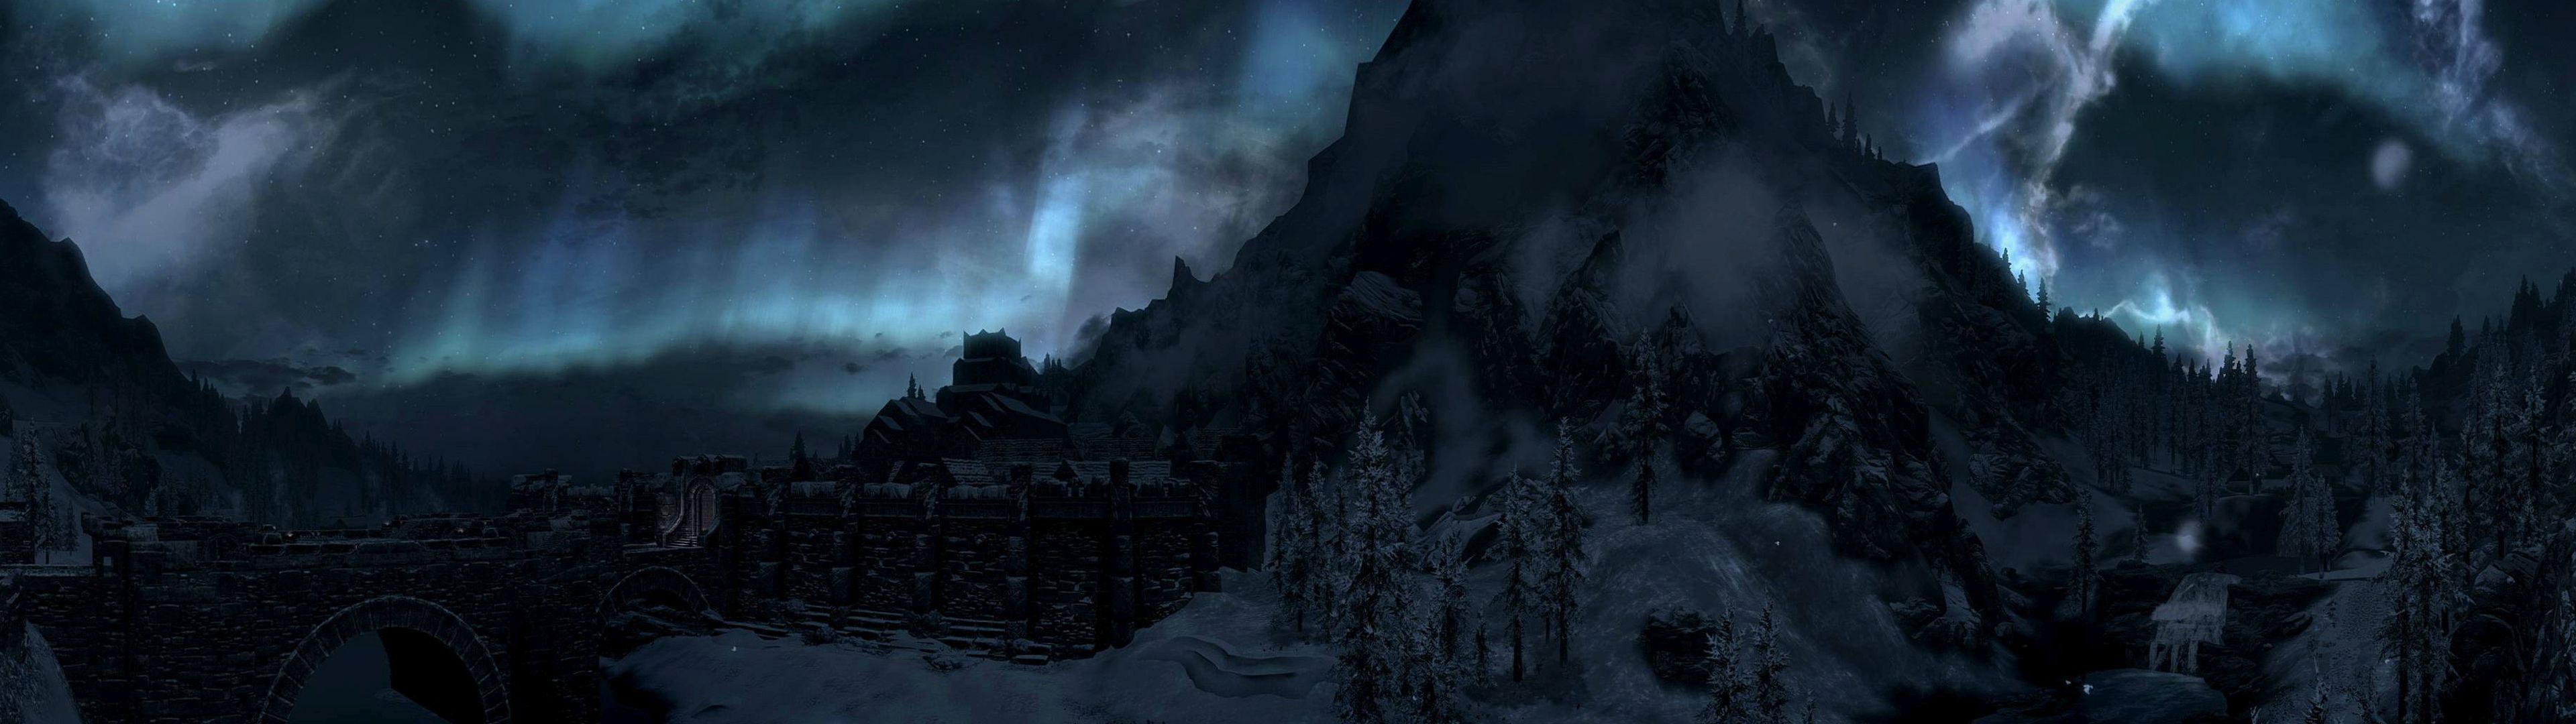 Aurora behind the mountain in The Elder Scrolls V: Skyrim desktop ...